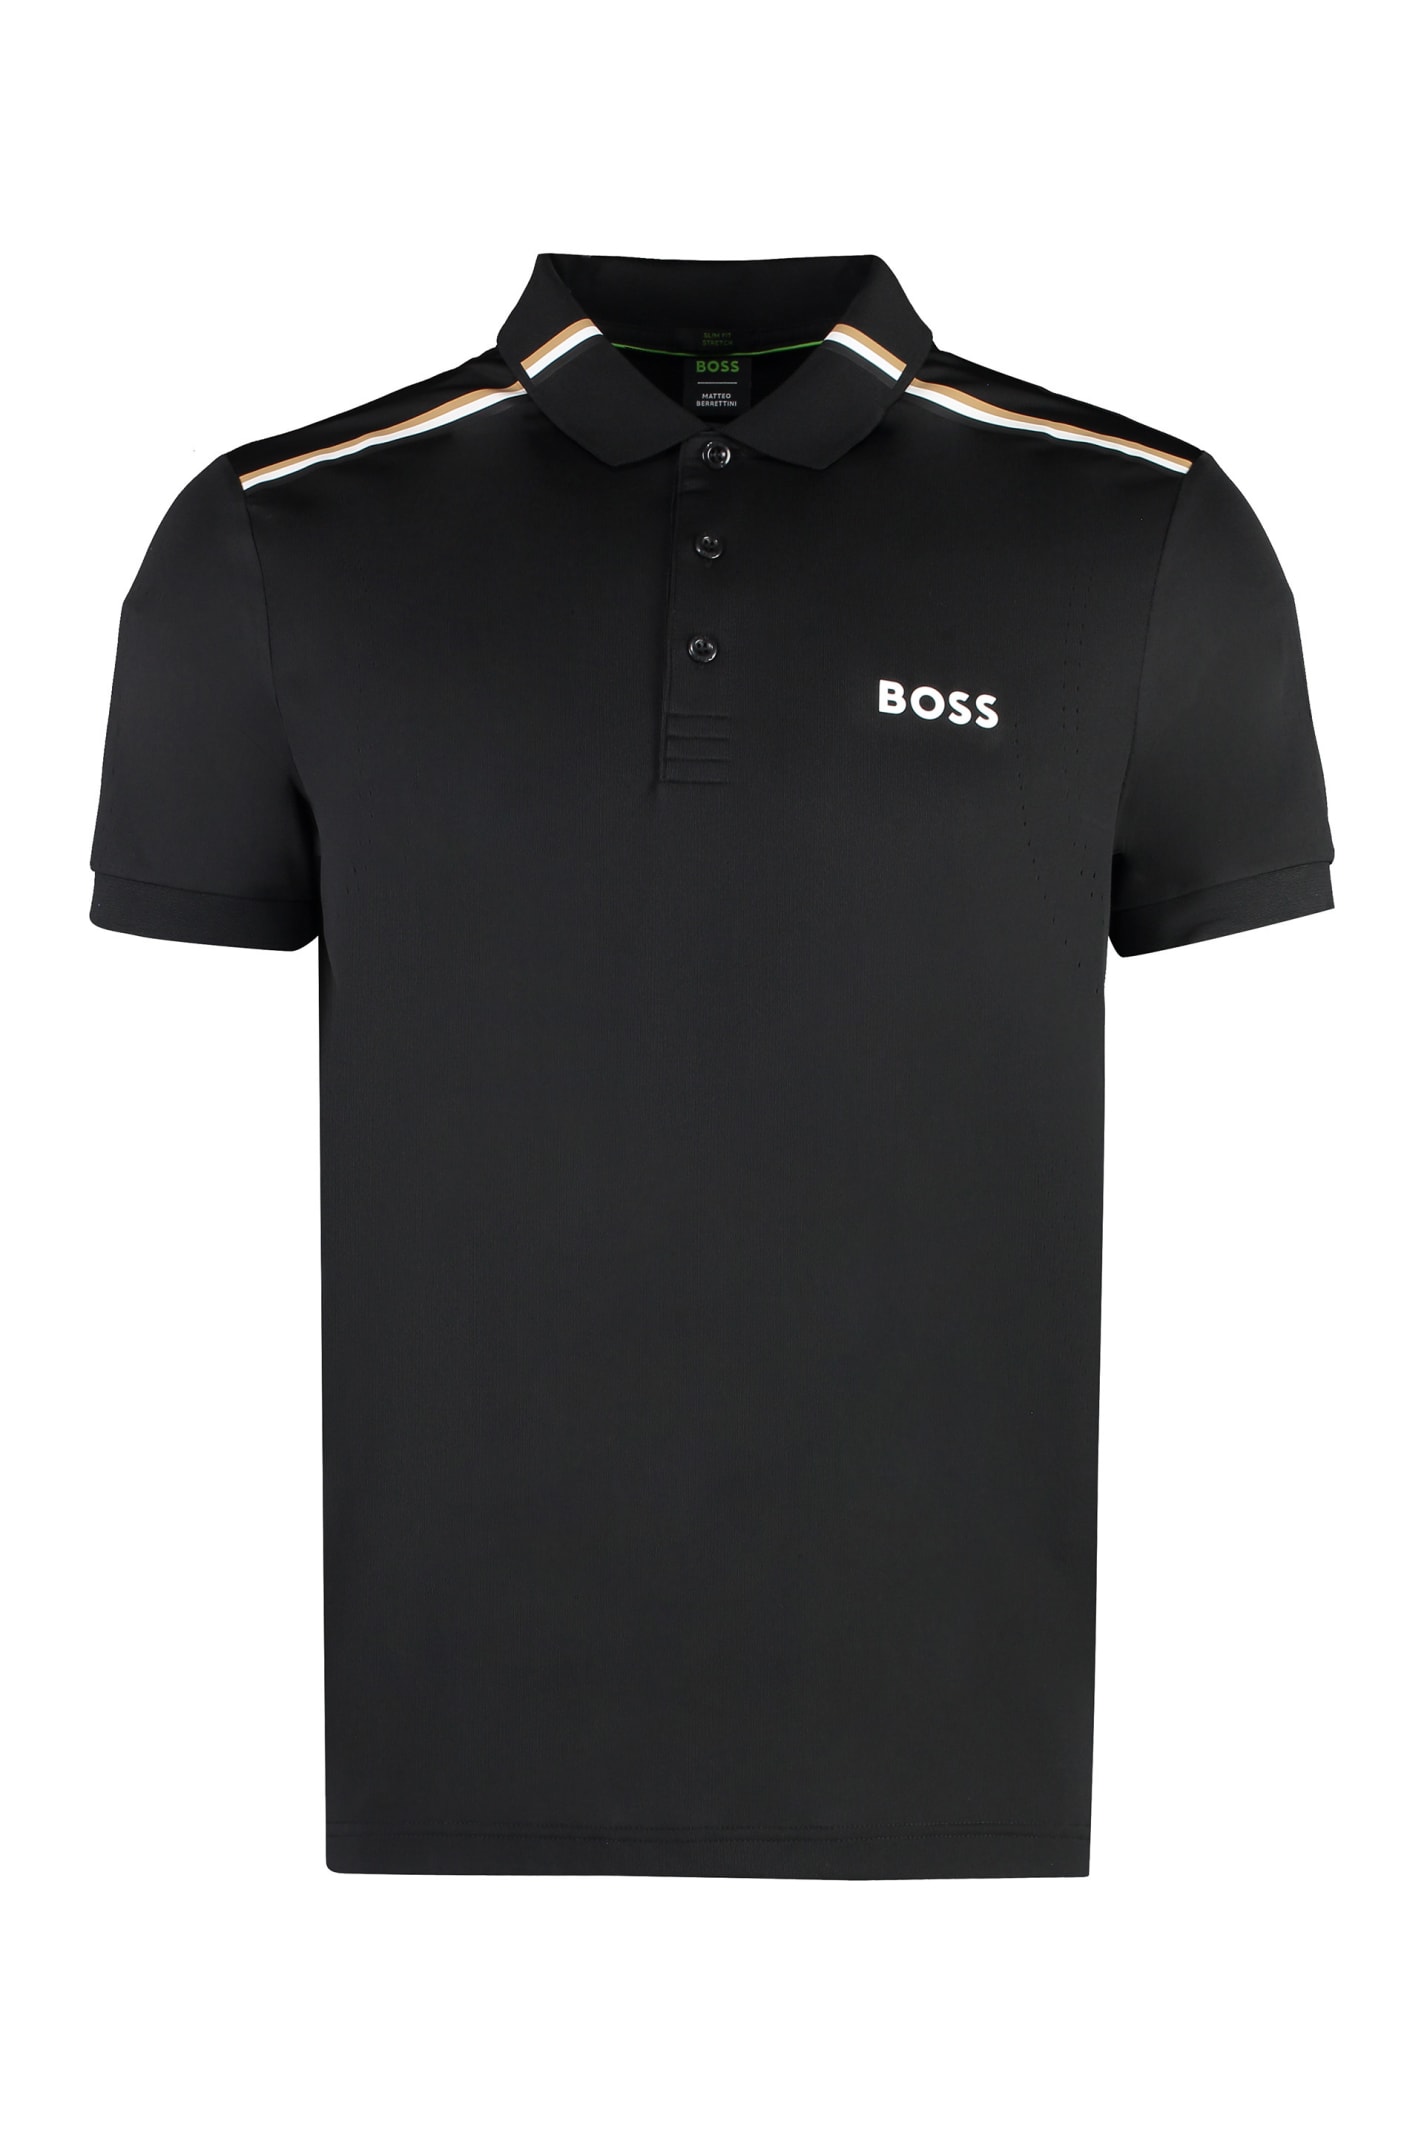 Boss X Matteo Berrettini - Techno Jersey Polo Shirt